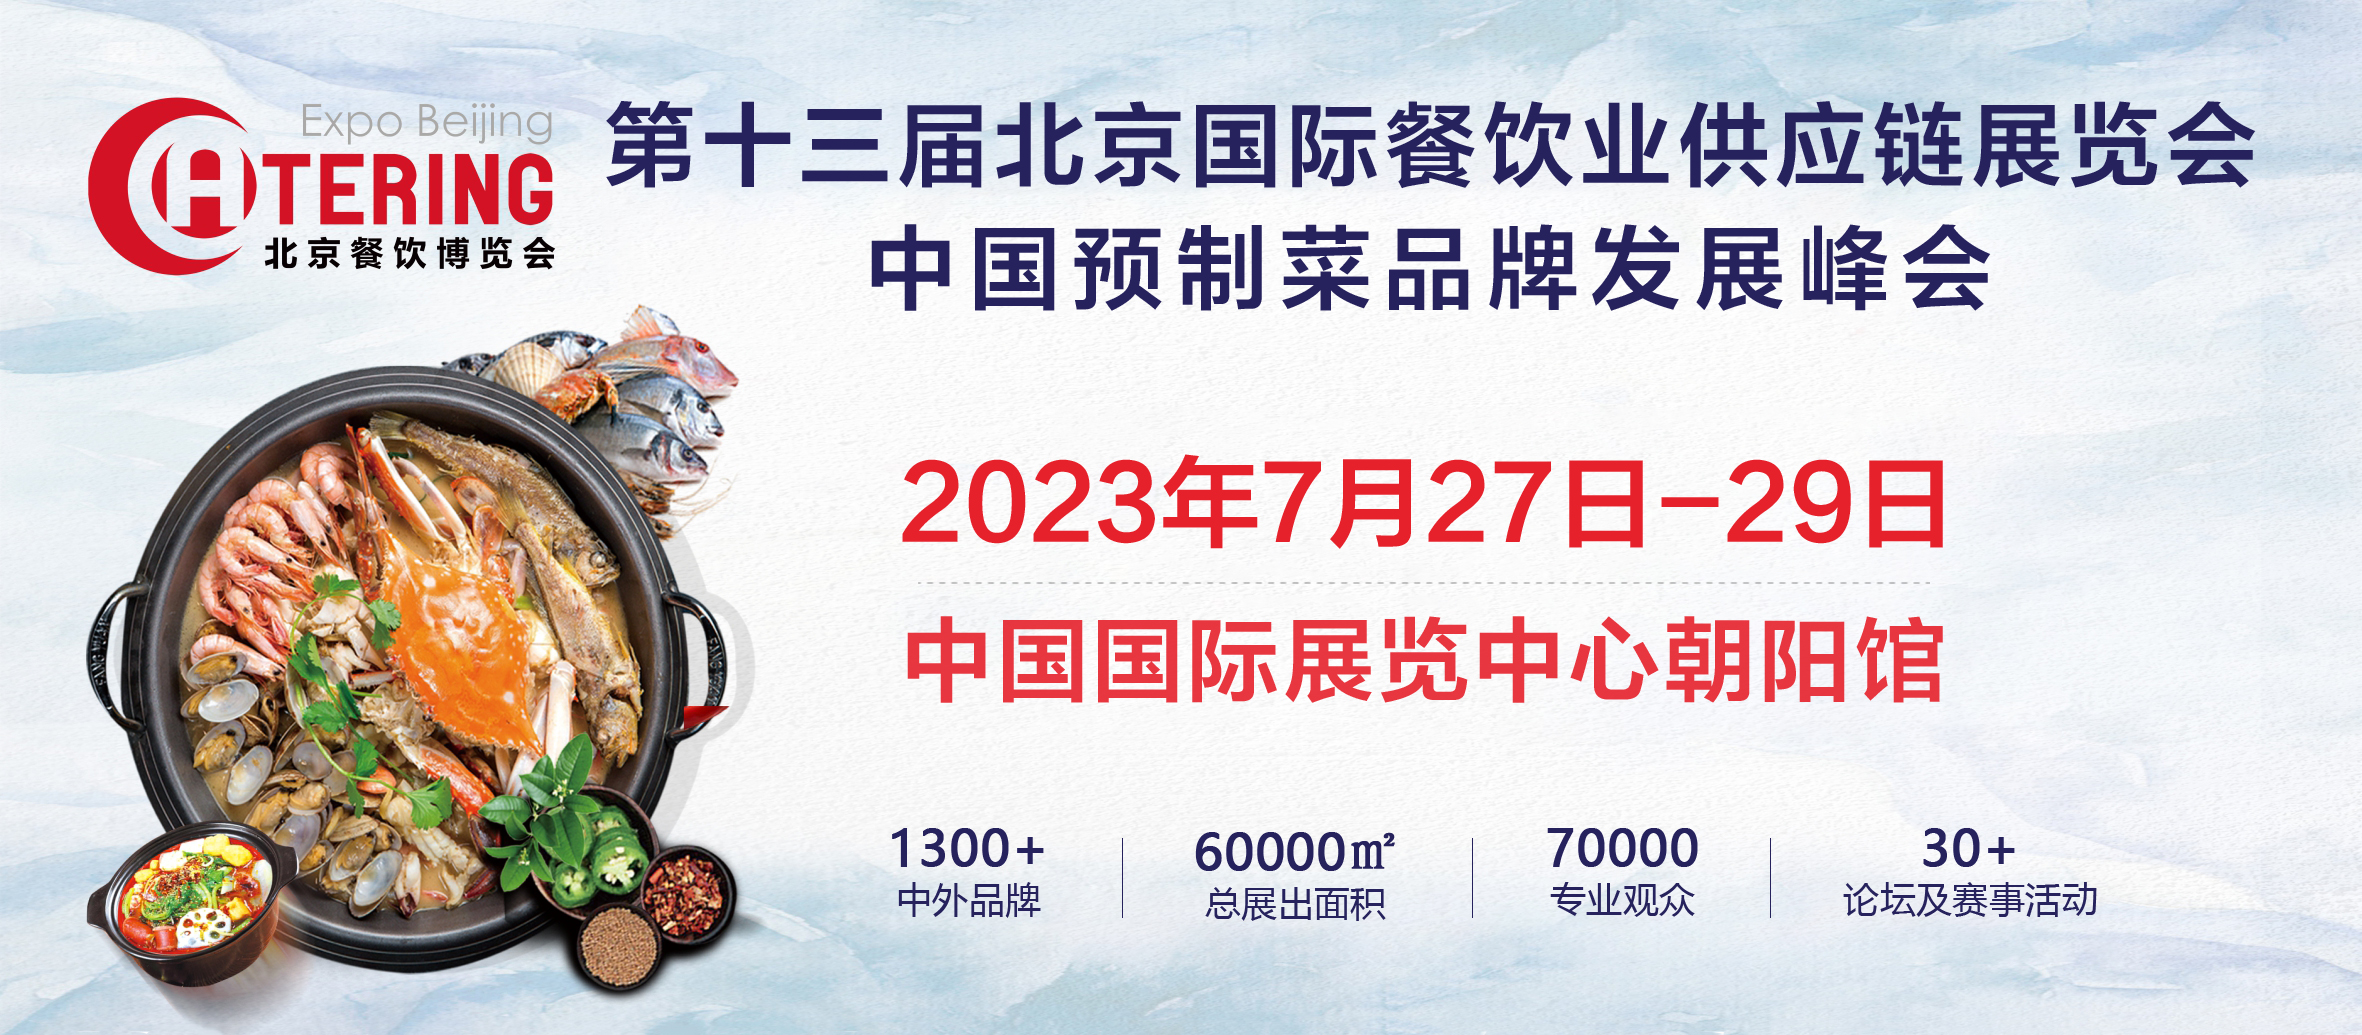 展商推介丨潍坊瑞翔塑料制品有限公司将携最新产品亮相2023北京餐博会(图1)